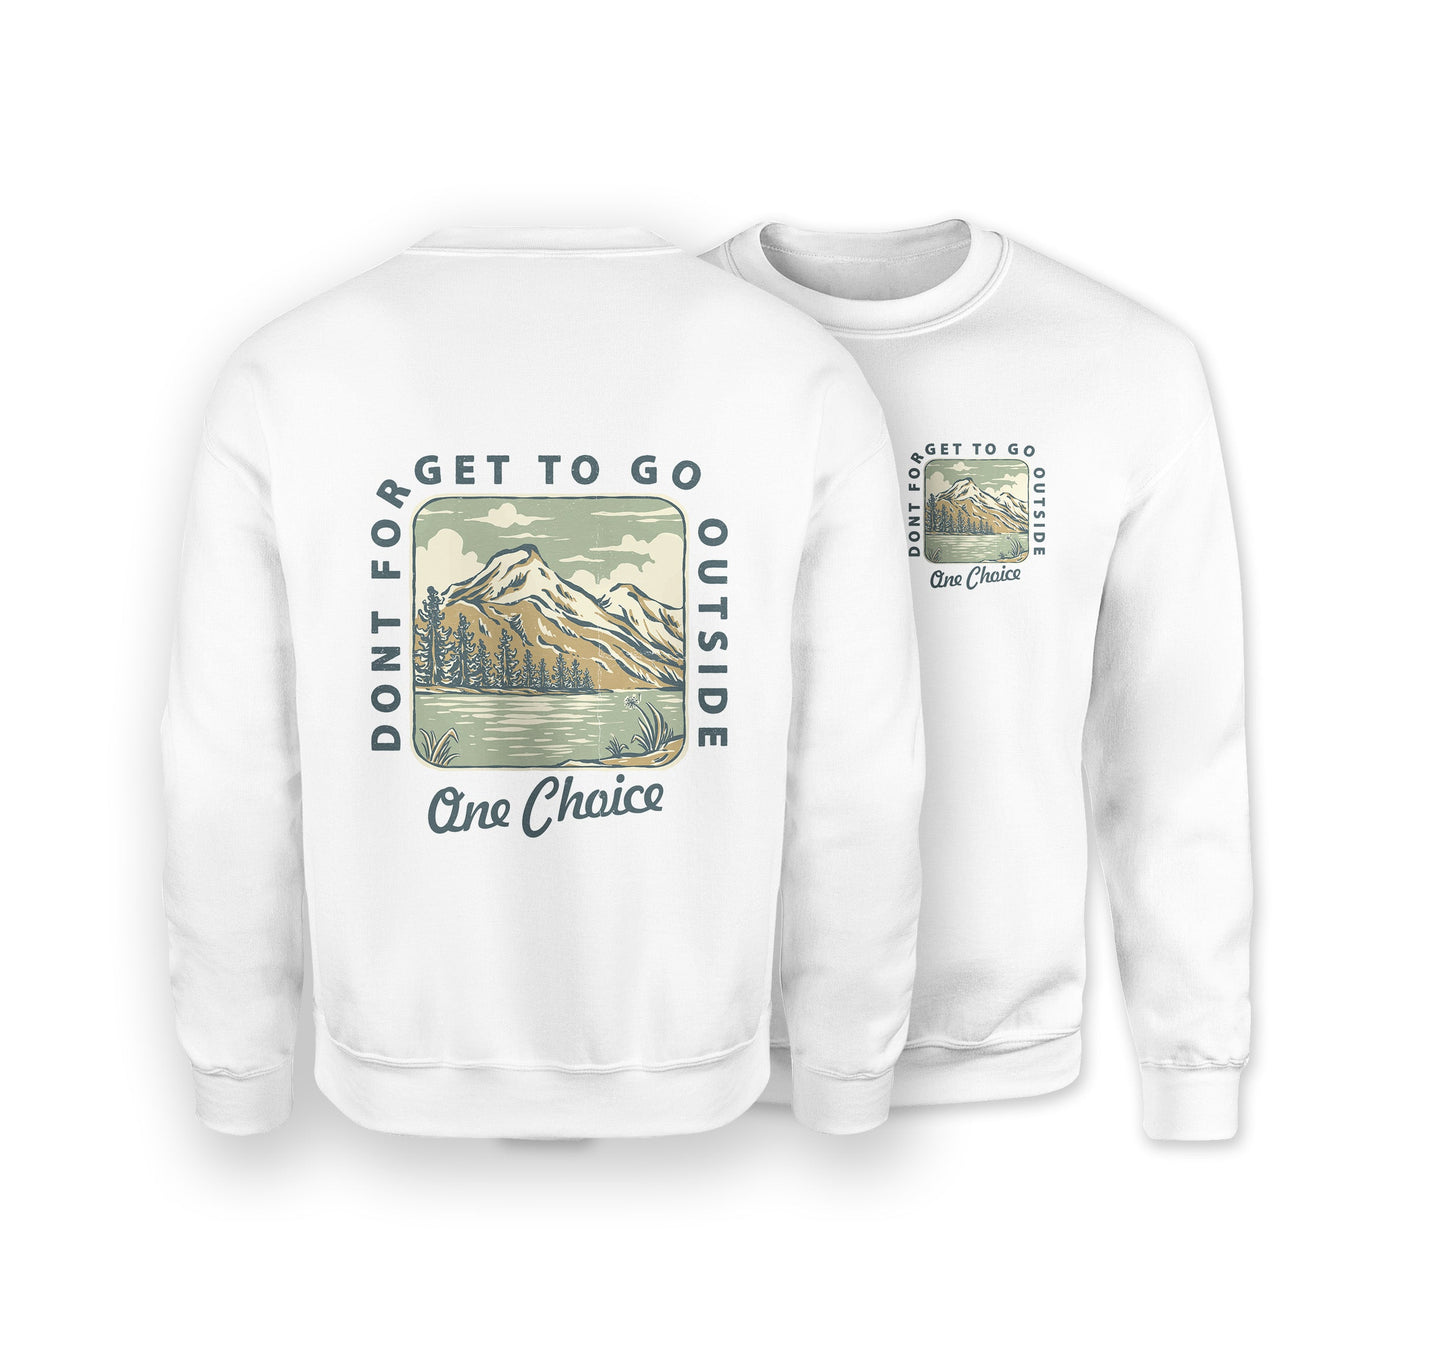 Go Outside Sweatshirt - Organic Cotton Sweatshirt